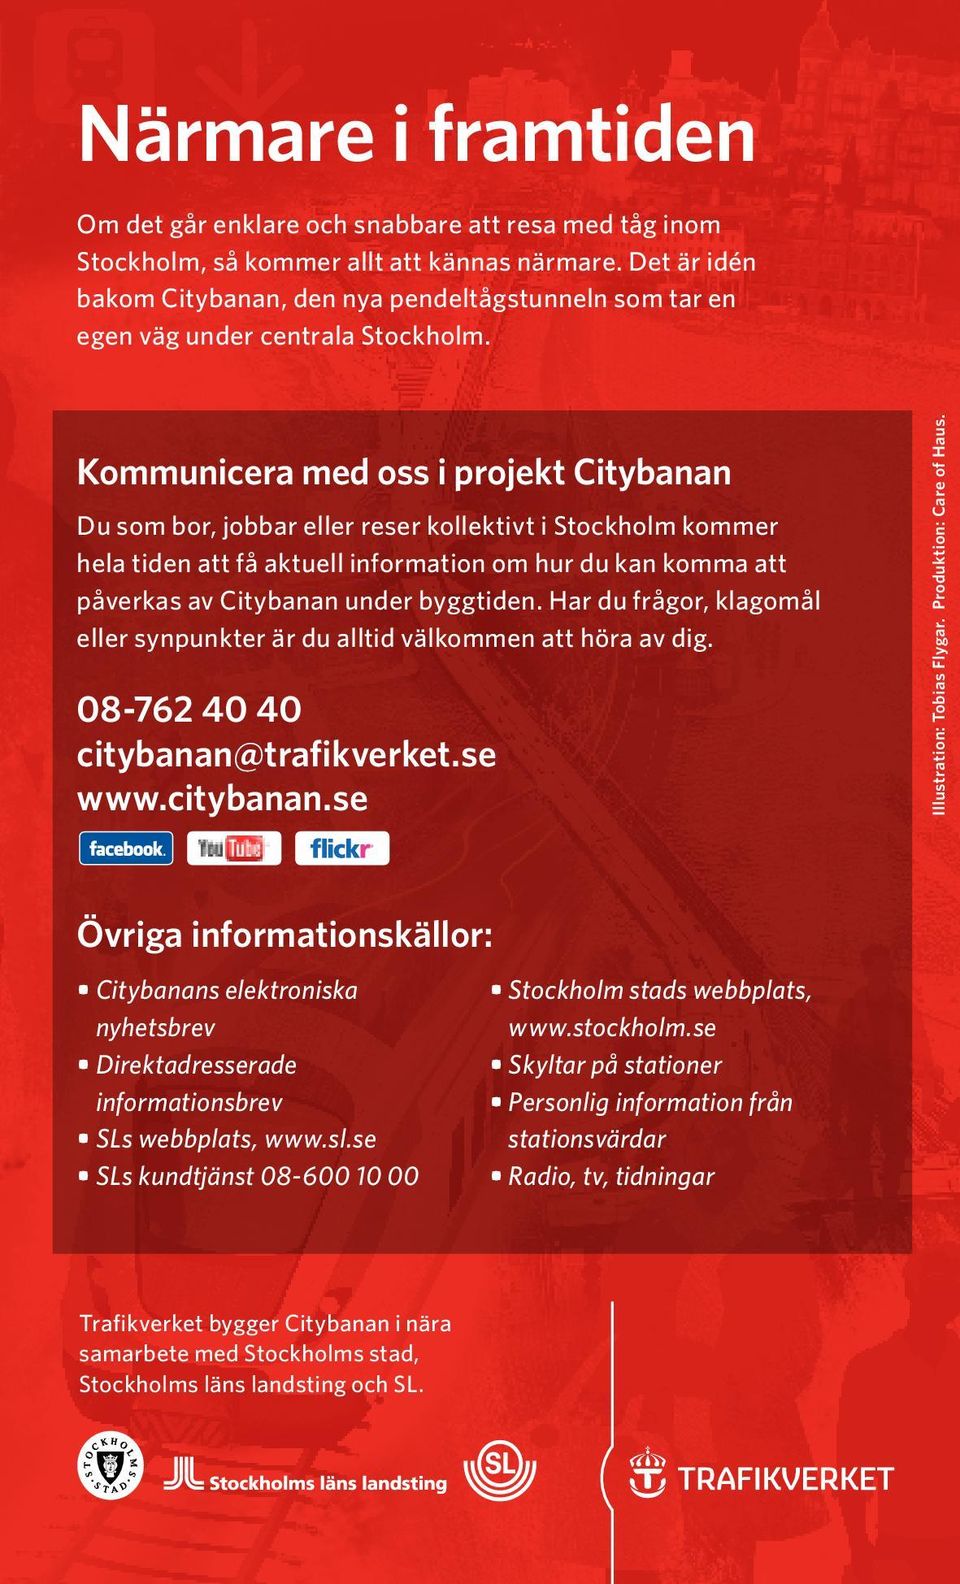 Kommunicera med oss i projekt Citybanan Du som bor, jobbar eller reser kollektivt i Stockholm kommer hela tiden att få aktuell information om hur du kan komma att påverkas av Citybanan under